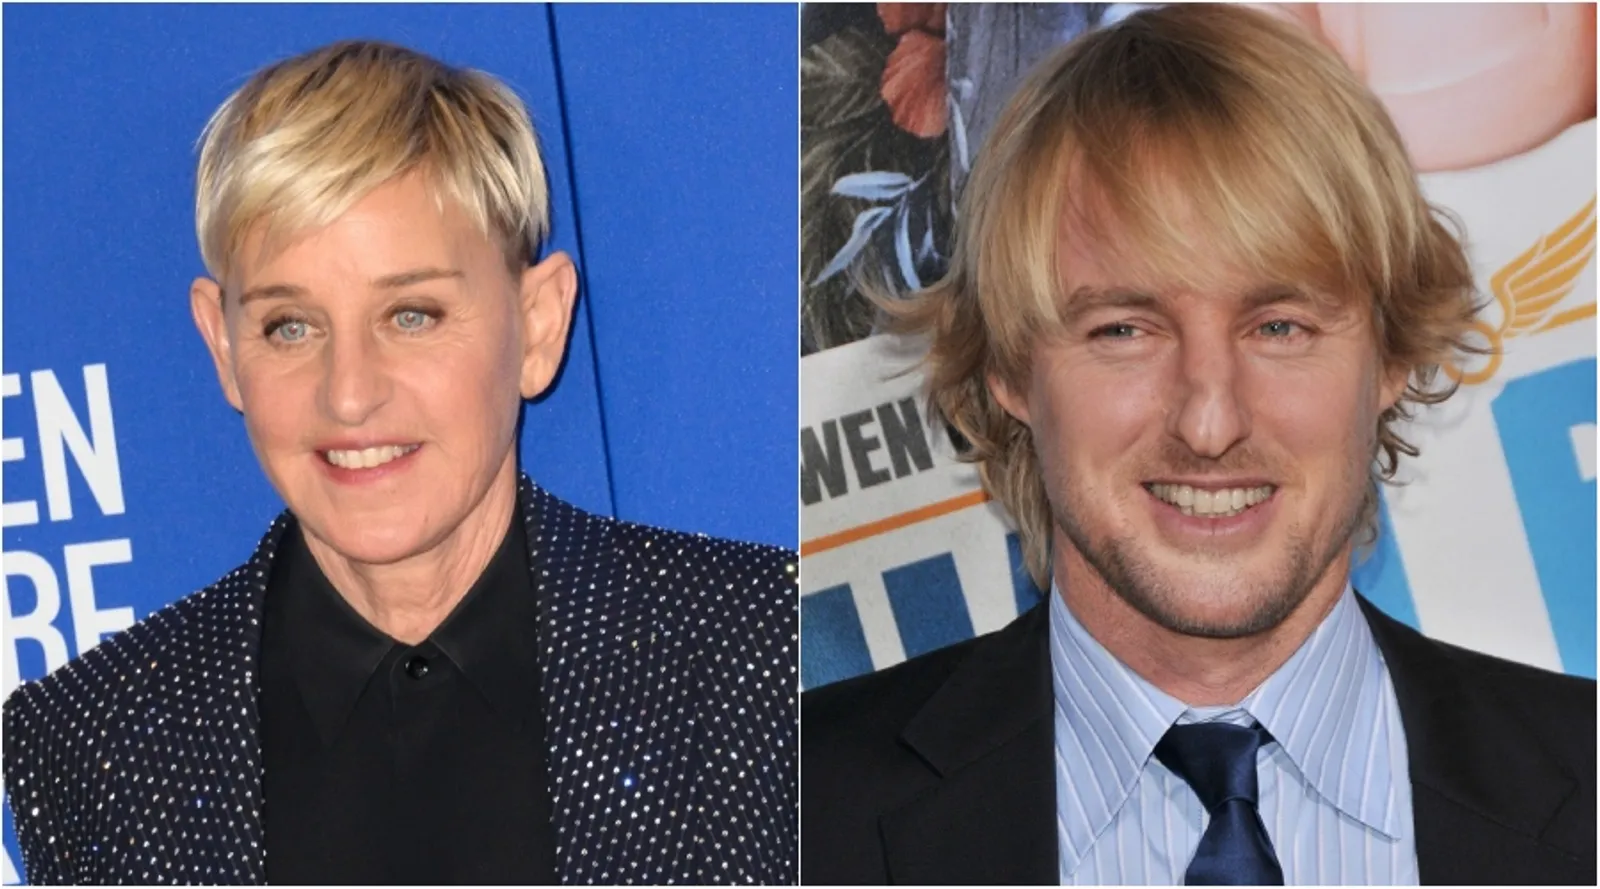 Ellen DeGeneres i Owen Wilson